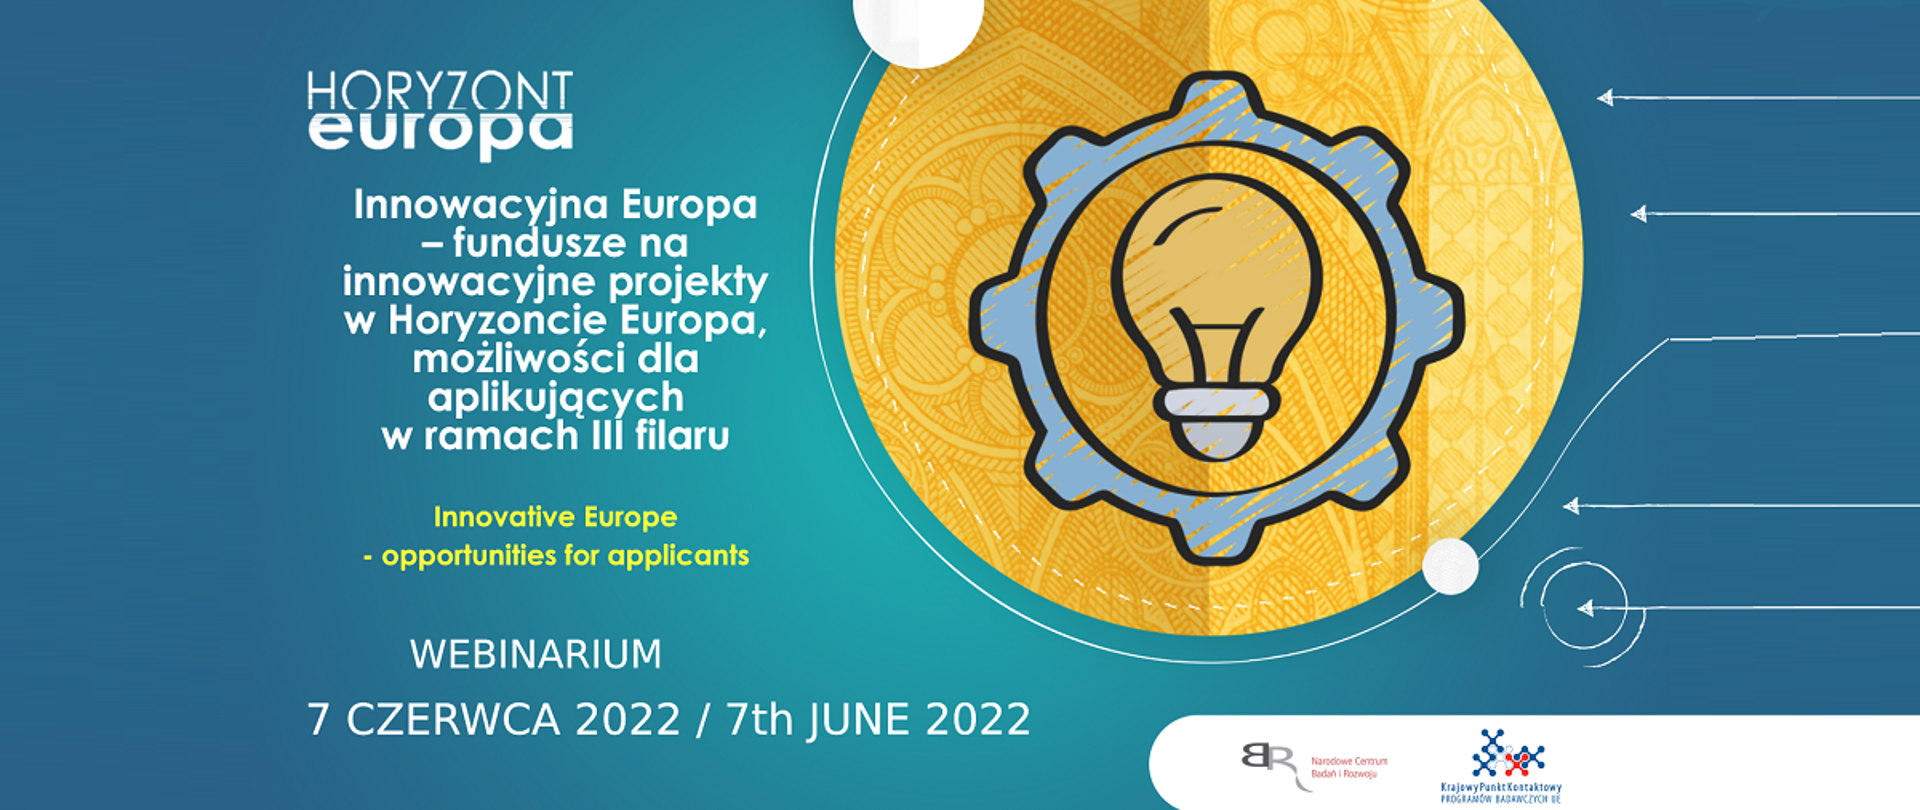 Horyzont Europa
Innowacyjna Europa - fundusze na innowacyjne projekty w Horyzoncie Europa, możliwości dla aplikujących w ramach III filaru
Webinarium
7 czerwca 2022 / 7th June 2022